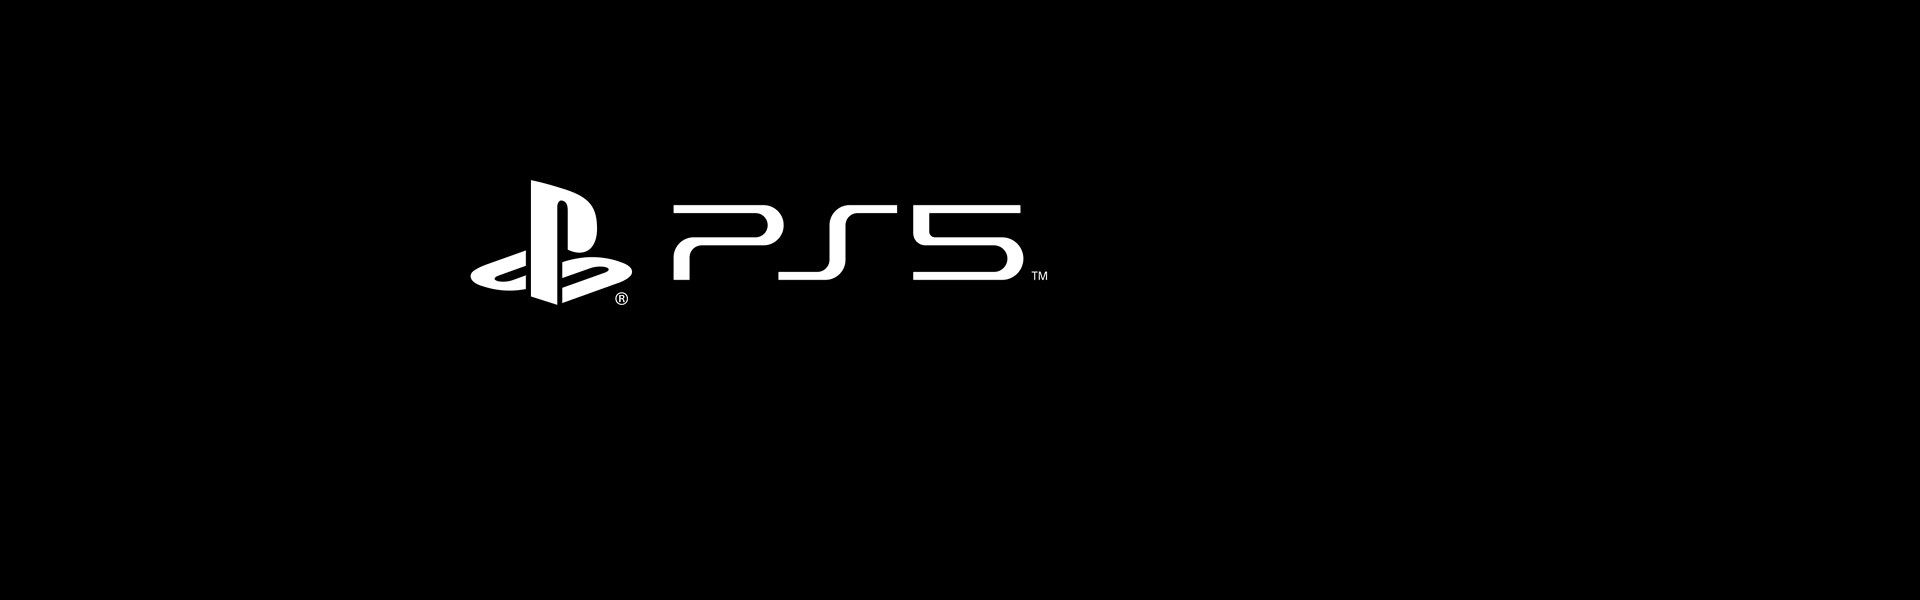 Enthüllung neuer Details zur PlayStation 5: Technische Daten der ...